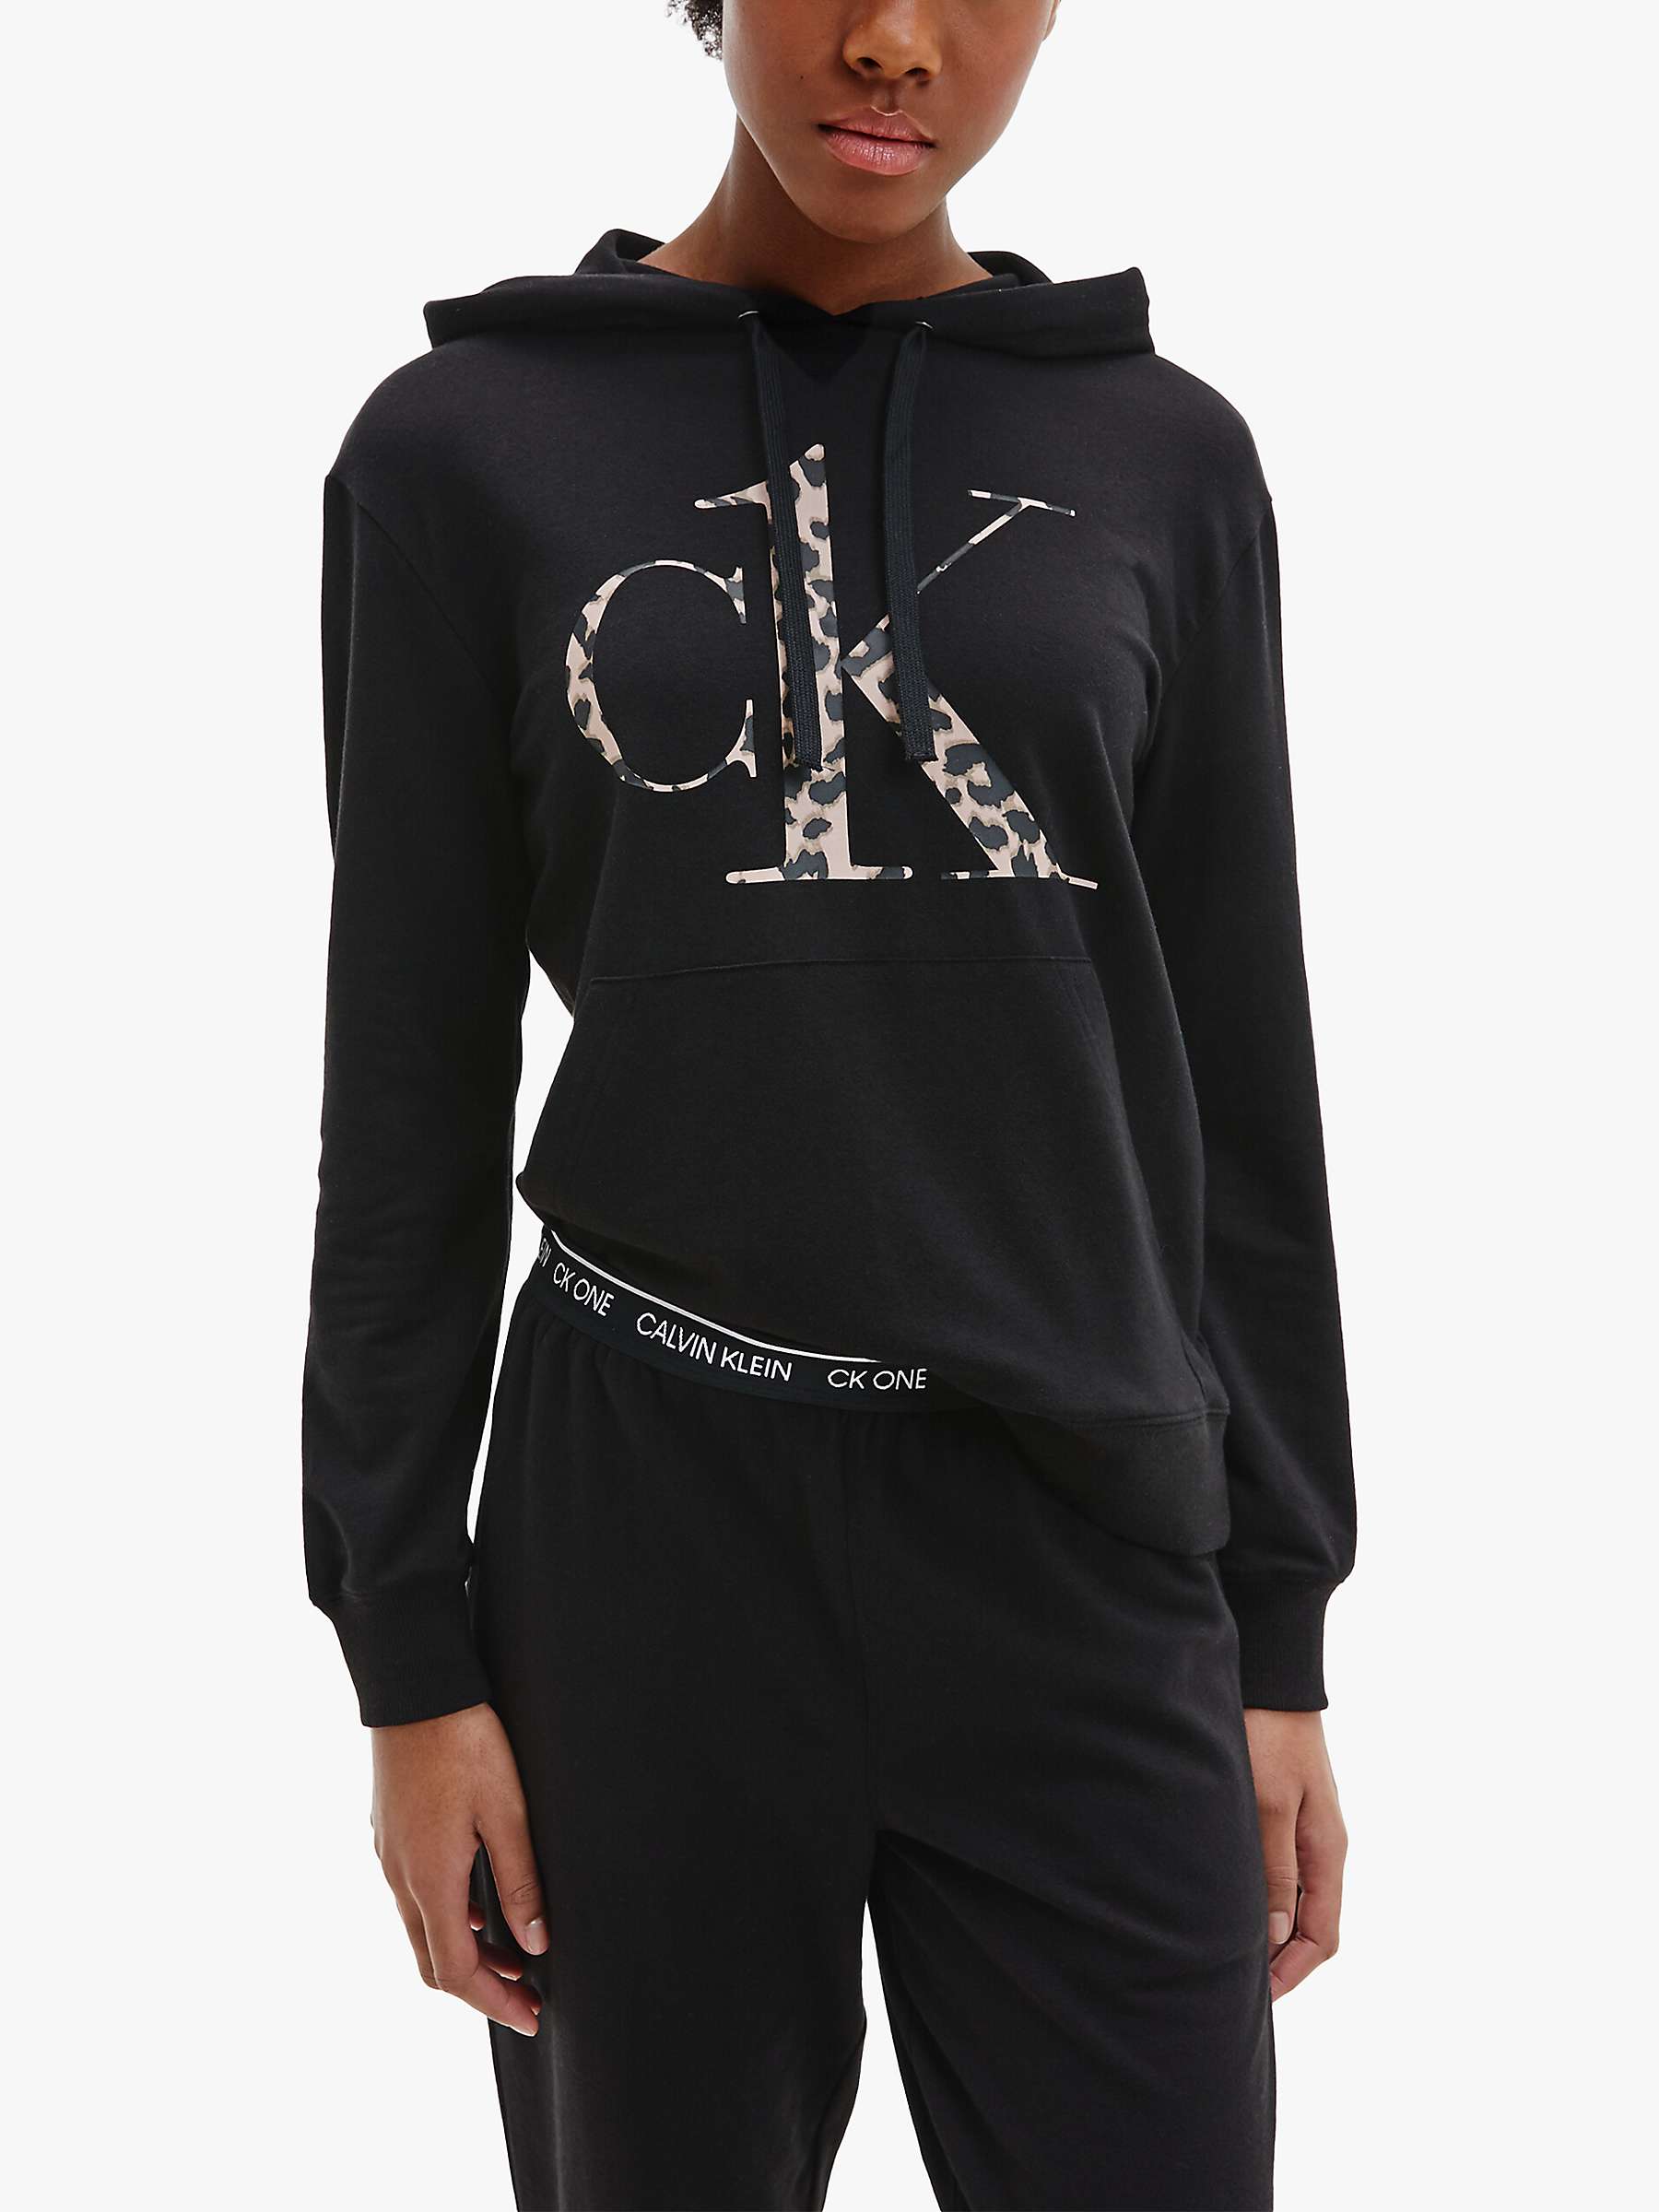 Buy Calvin Klein CK One Glisten Hoodie, Black Online at johnlewis.com